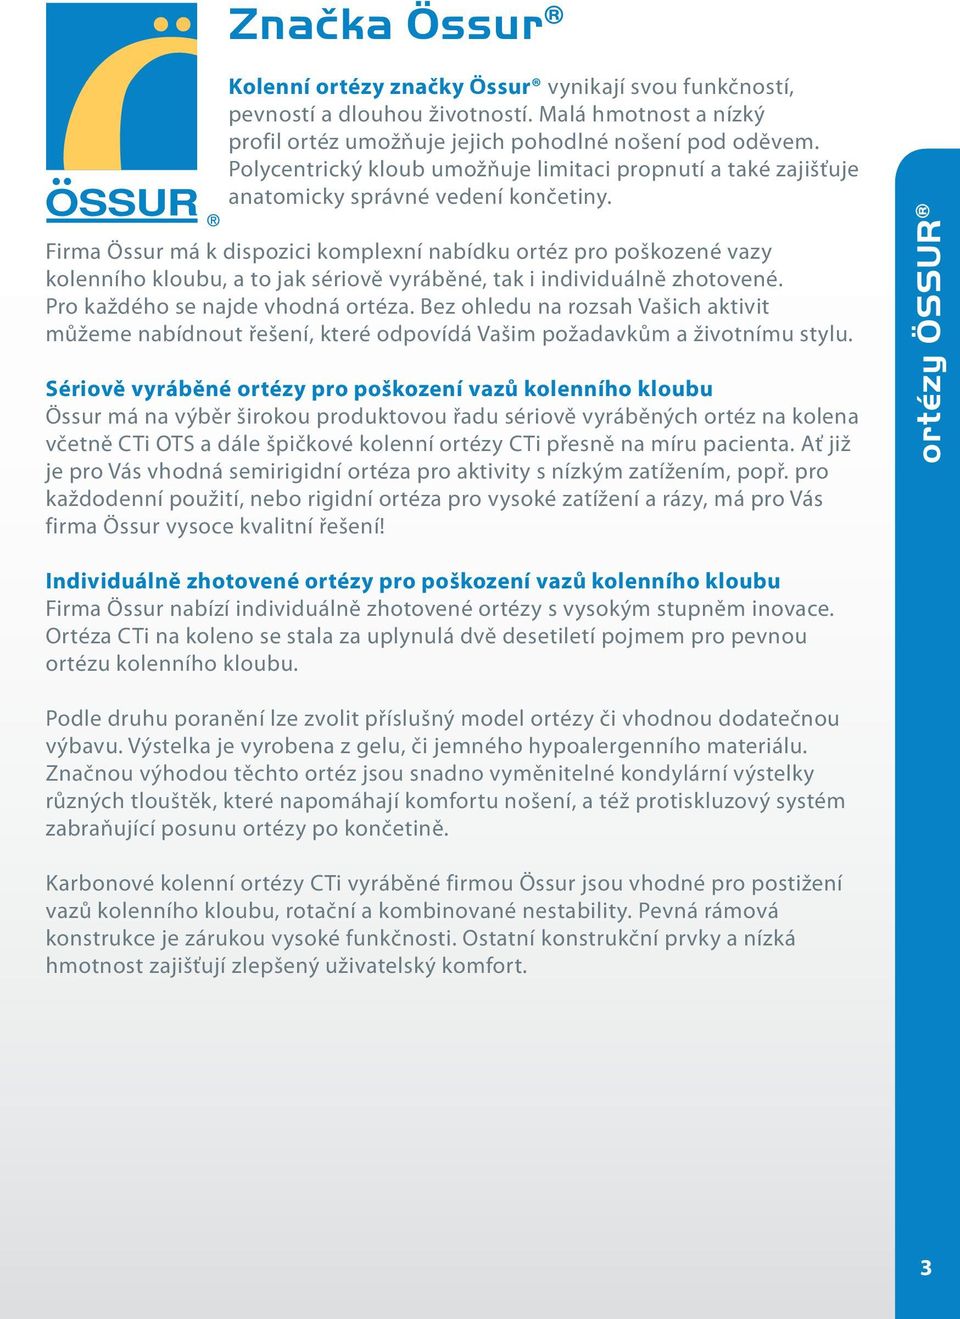 Firma Össur má k dispozici komplexní nabídku ortéz pro poškozené vazy kolenního kloubu, a to jak sériově vyráběné, tak i individuálně zhotovené. Pro každého se najde vhodná ortéza.